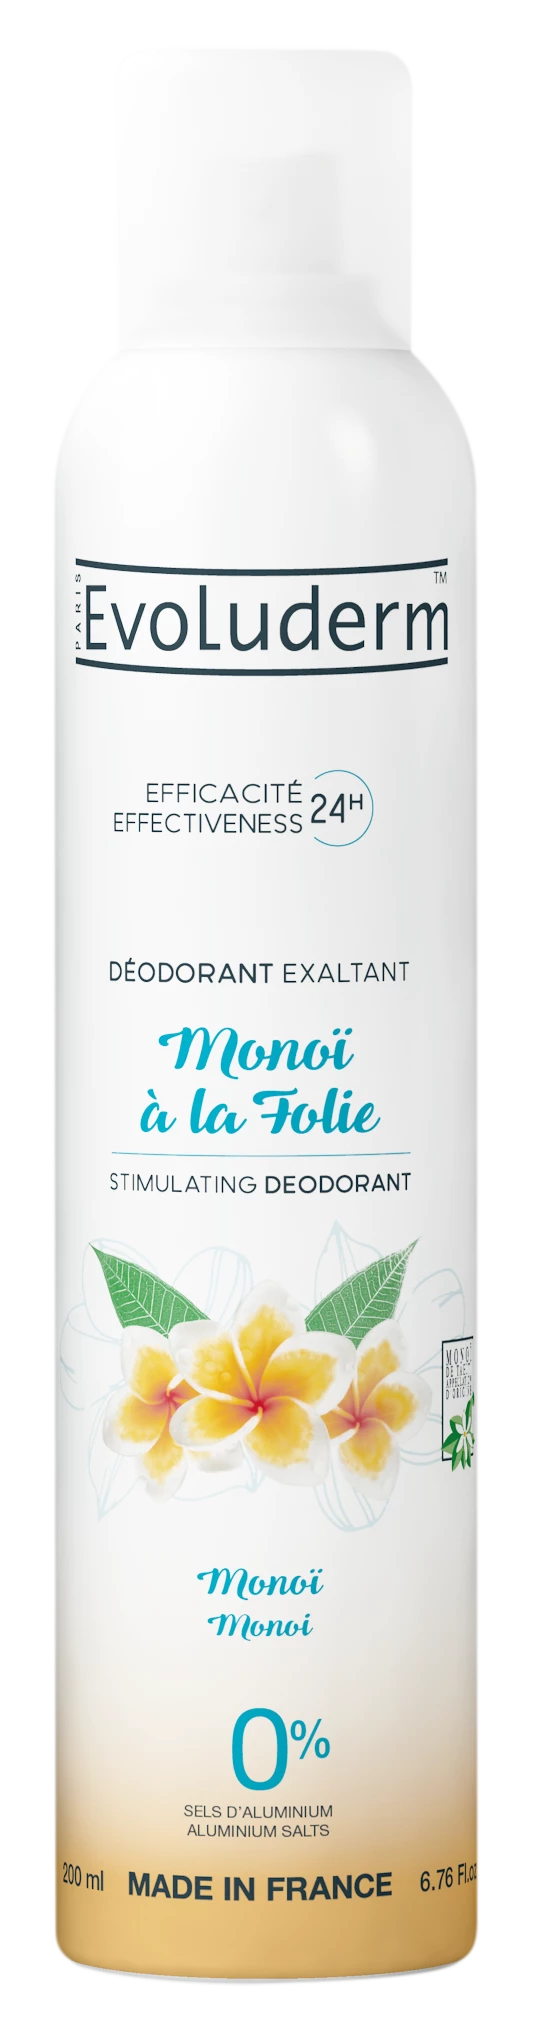 Deodorante Monoi à la Folie Monoï, 200 ml - EVOLUDERM